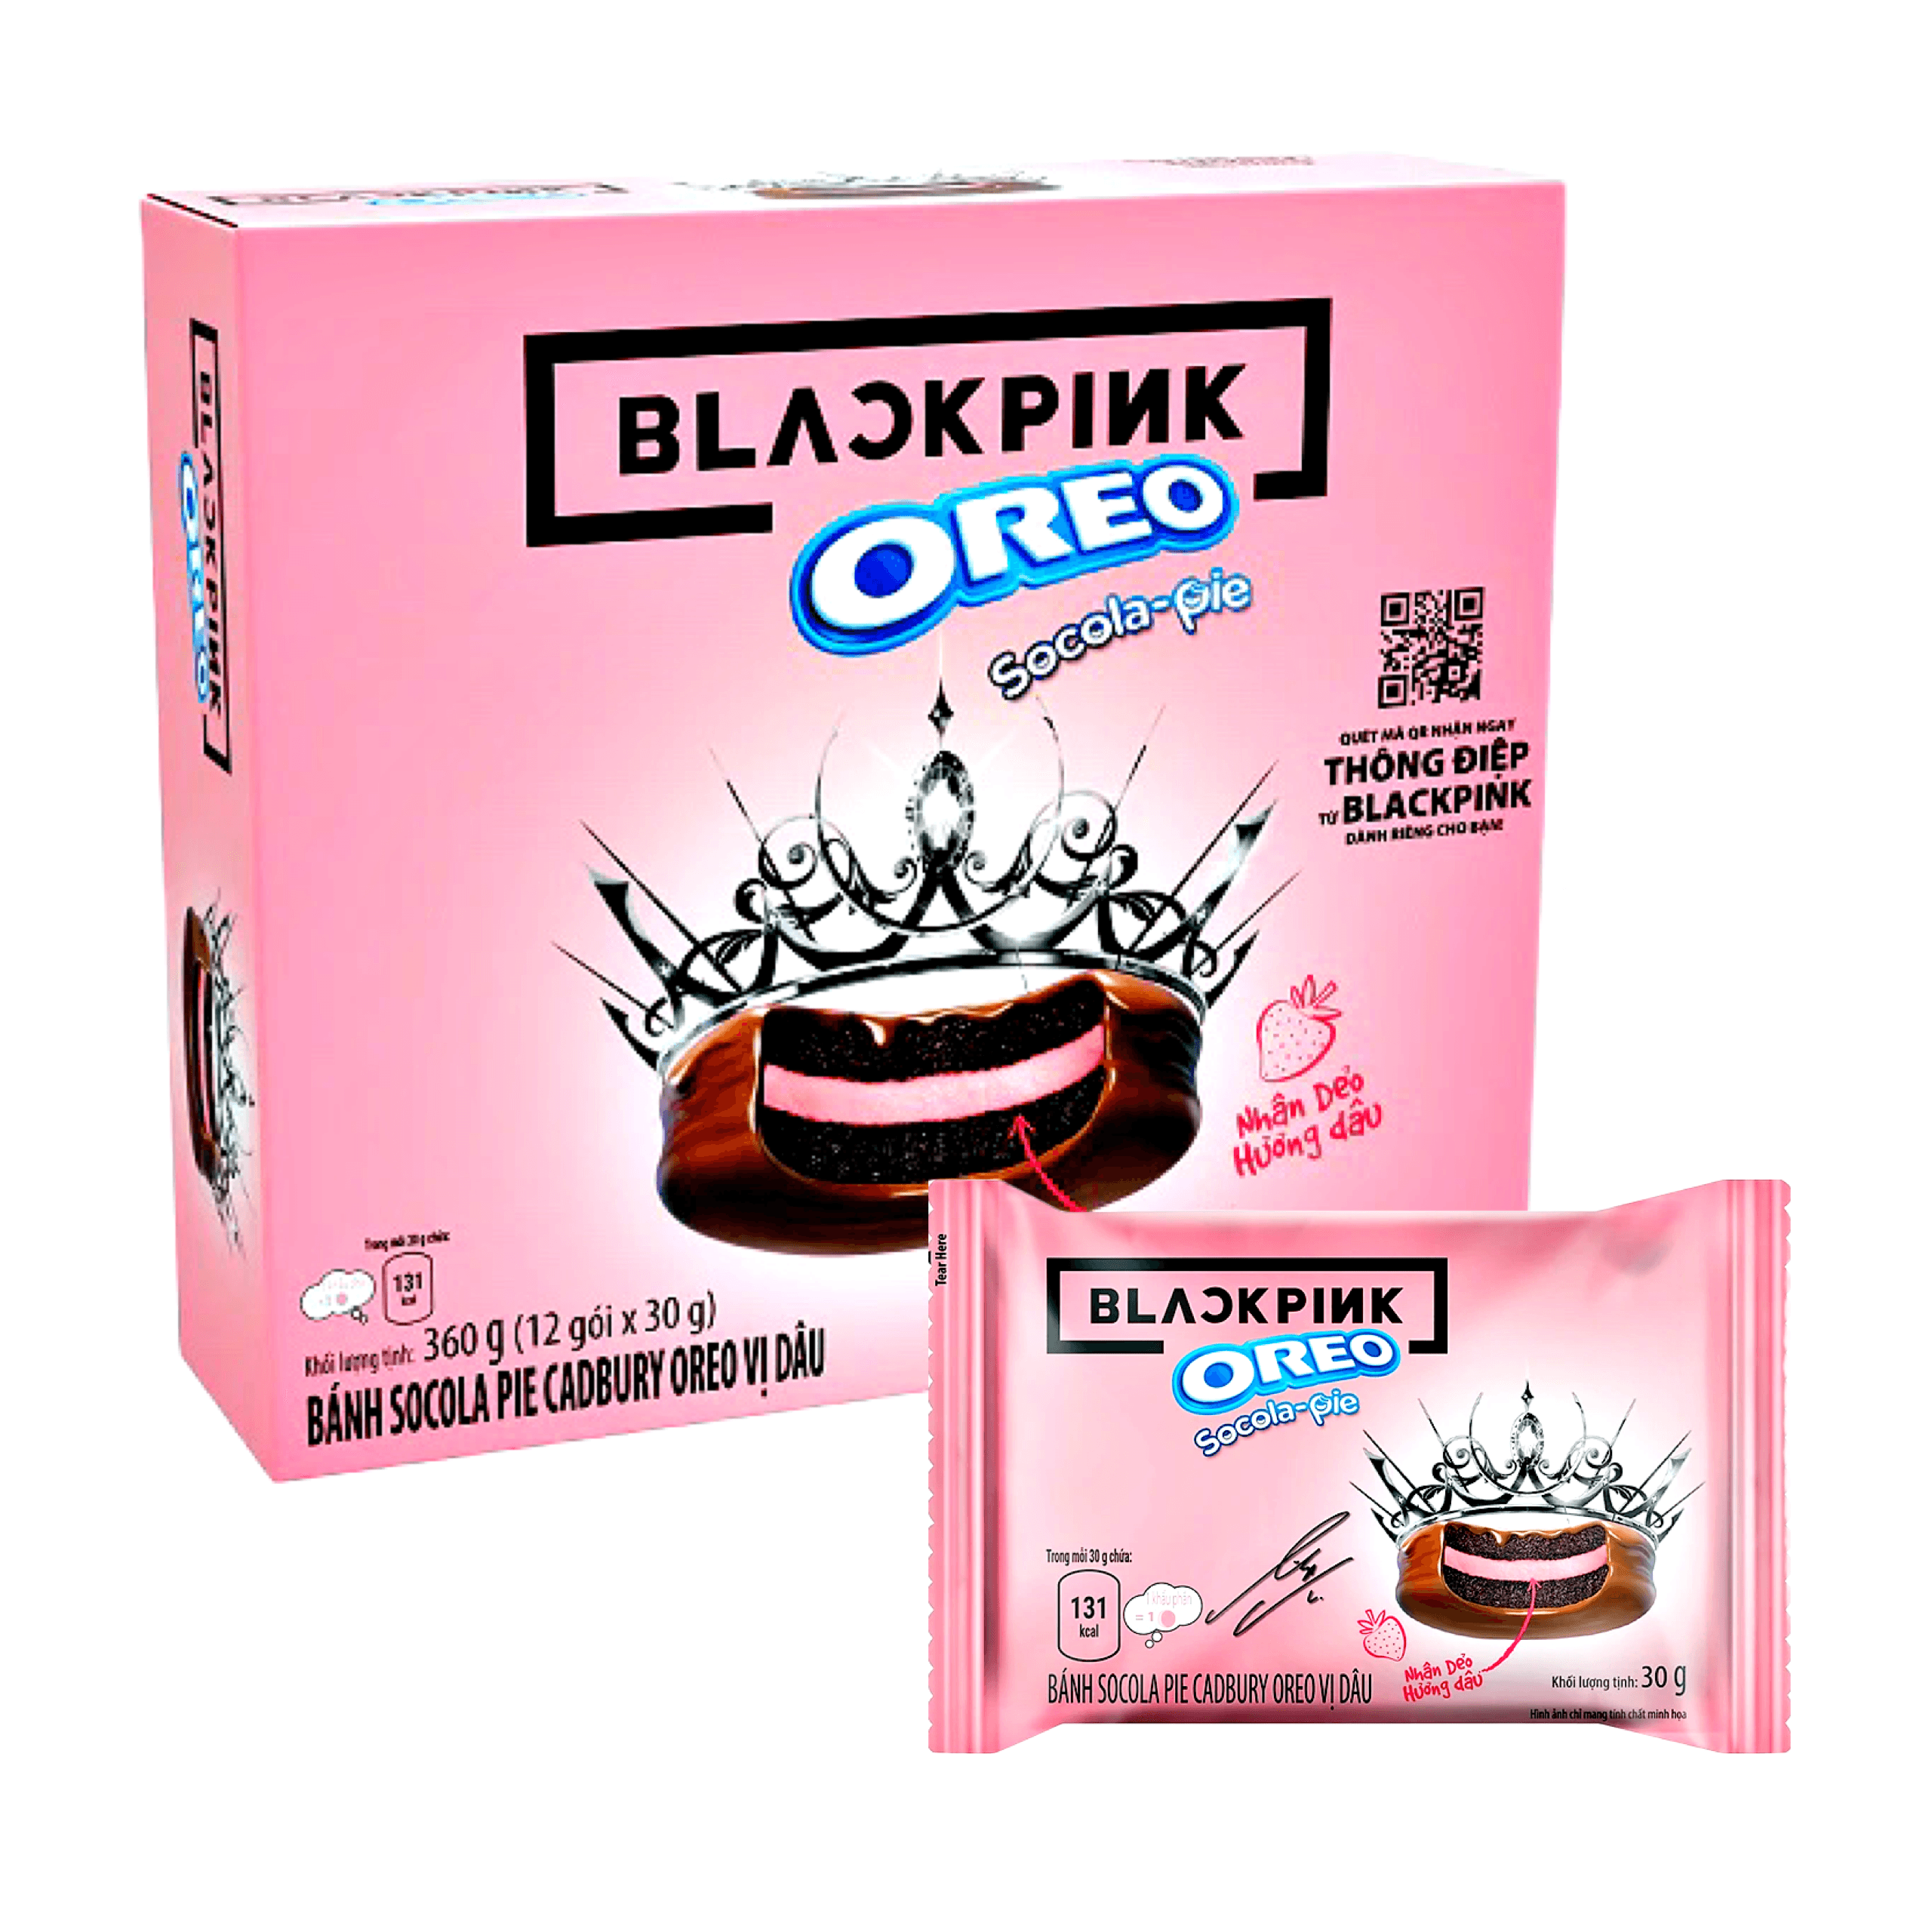 Blackpink x Oreo Socola Pie Strawberry 12x30g - The Snacks Box: Online ...